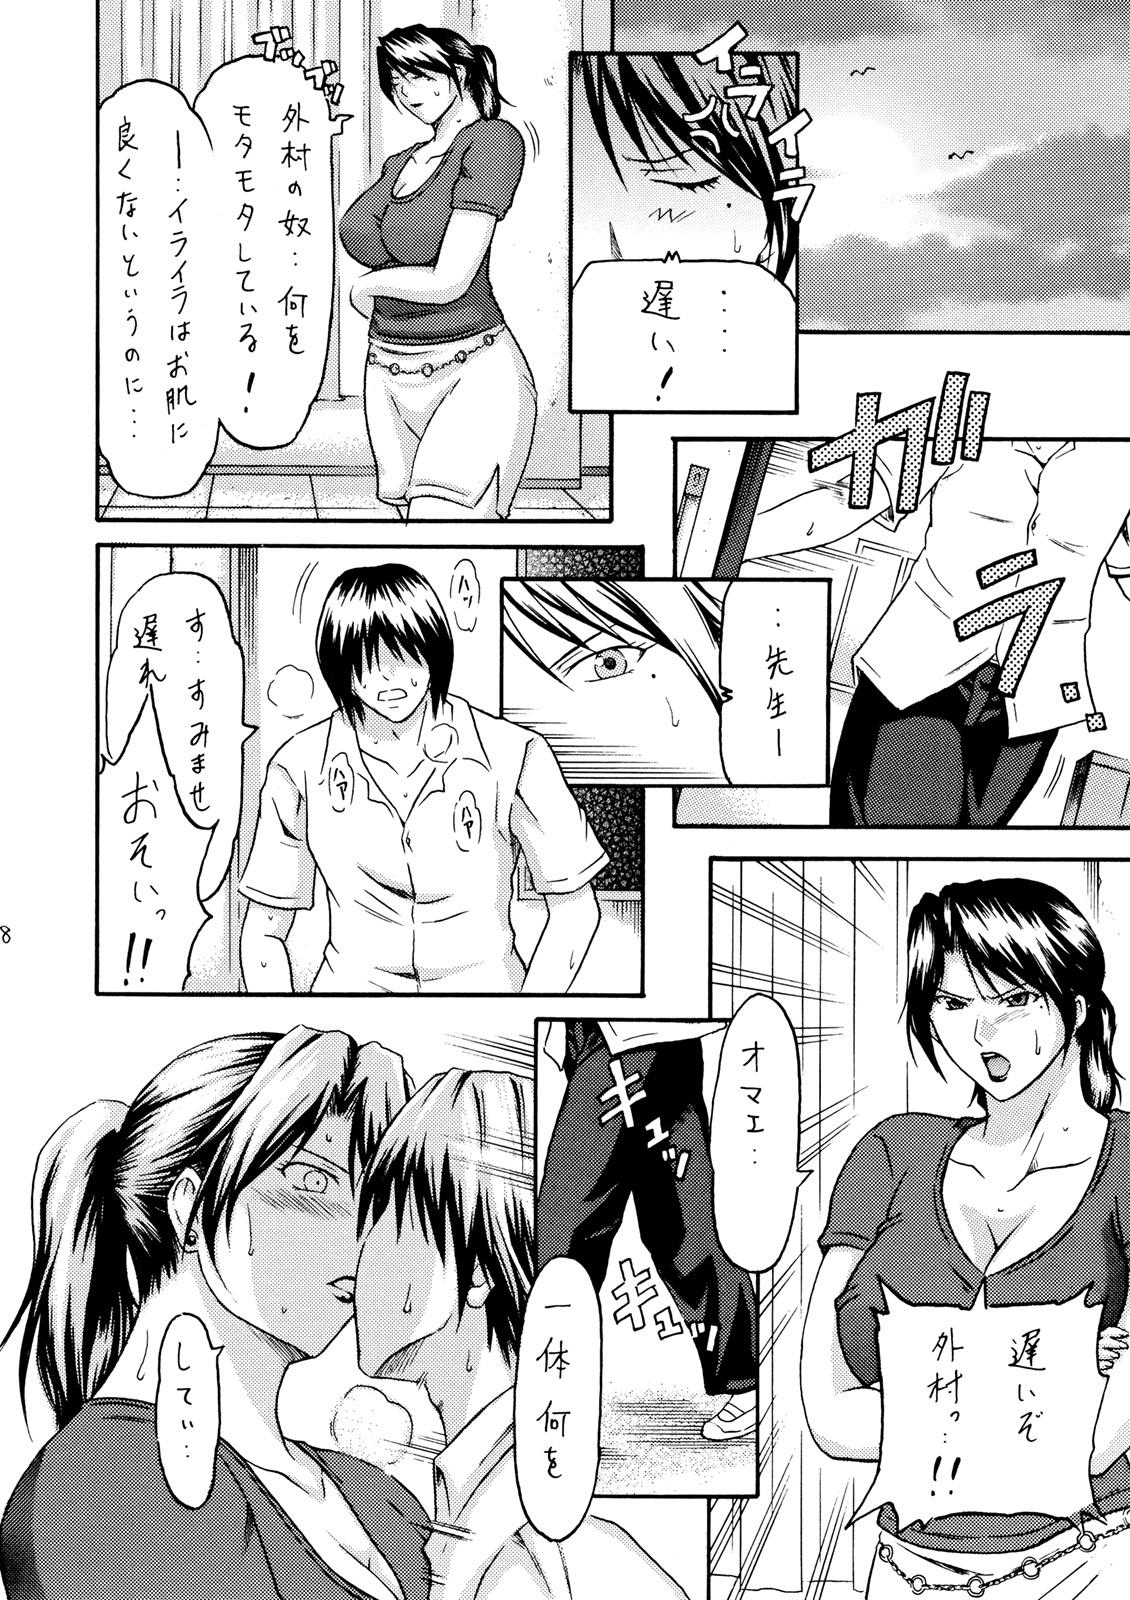 Old Zoku Houkago no Joou - Ichigo 100 Pussy Eating - Page 7